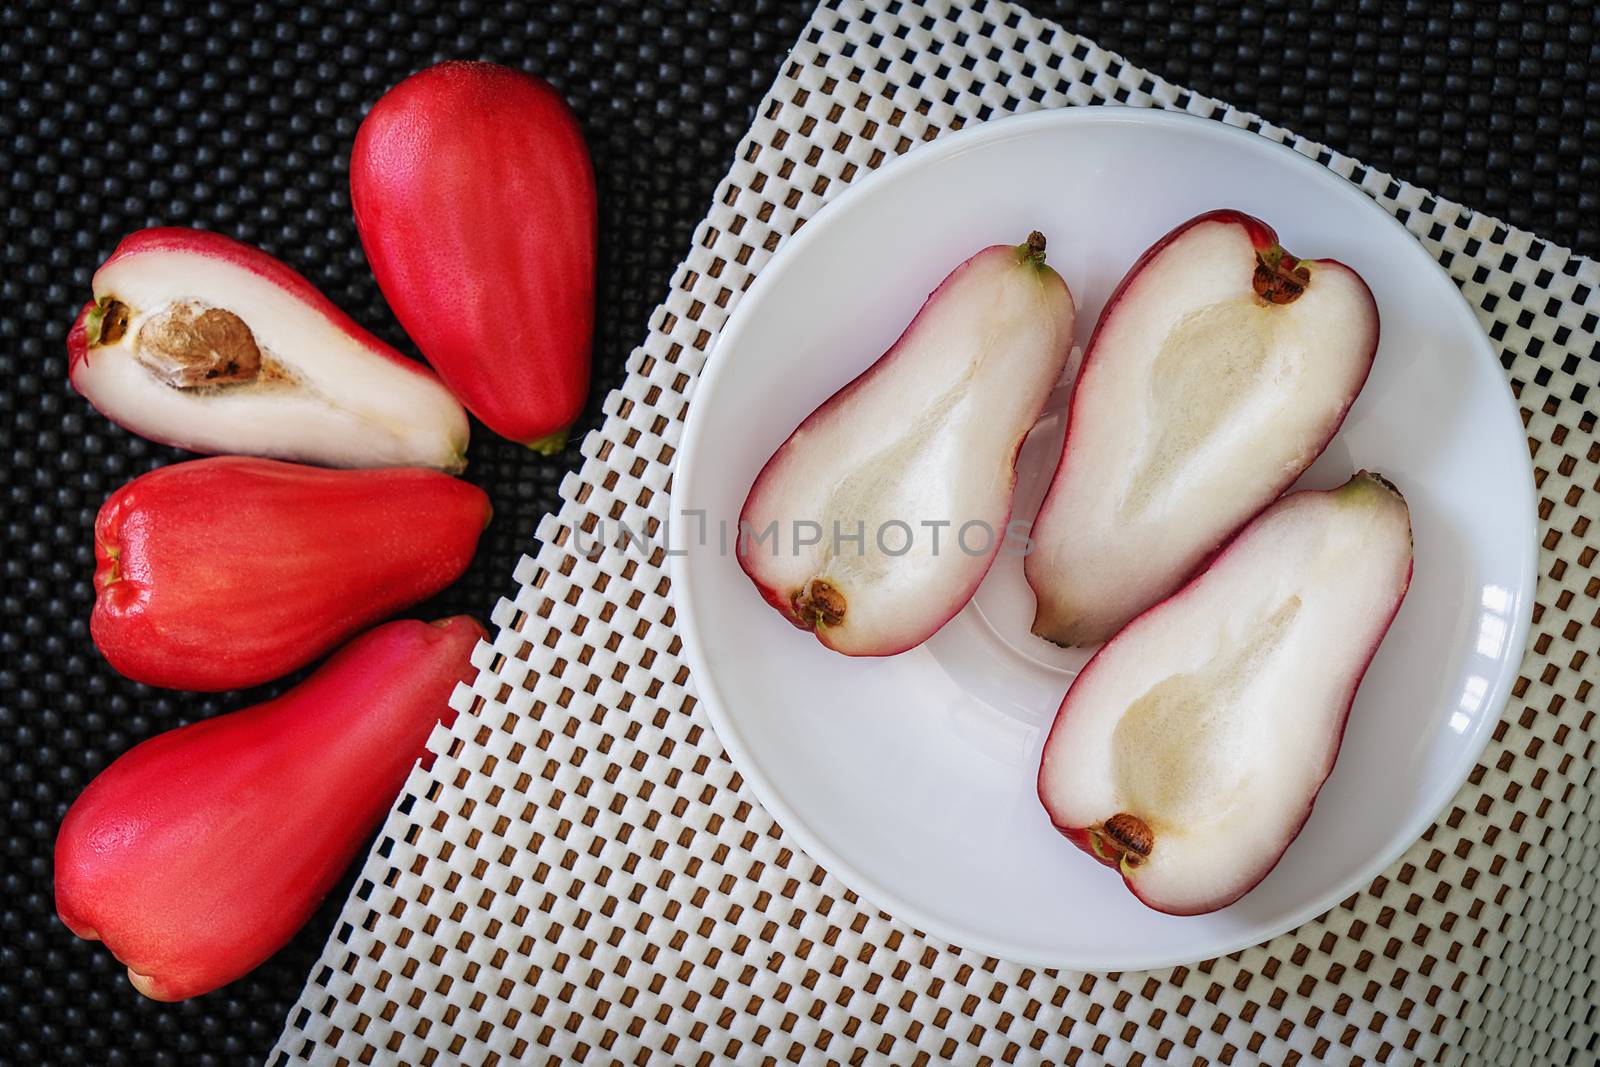 Pomarosa fruits by jrivalta